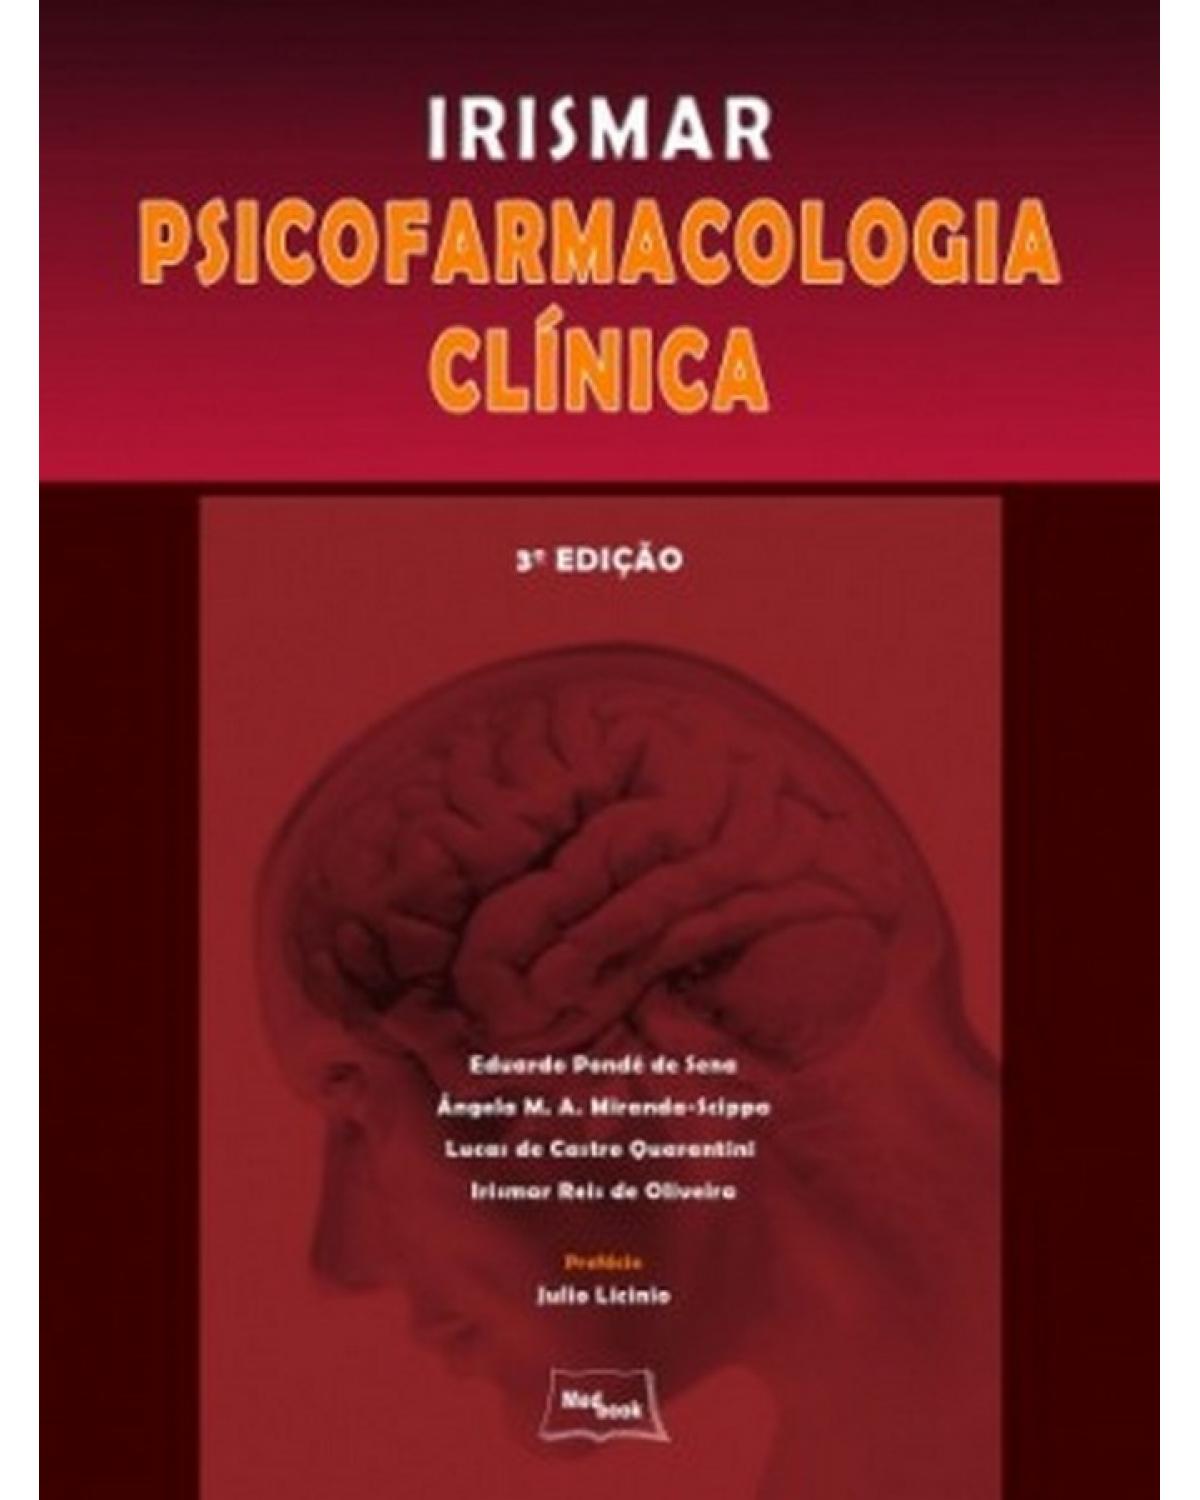 Irismar - Psicofarmacologia clínica - 3ª Edição | 2011